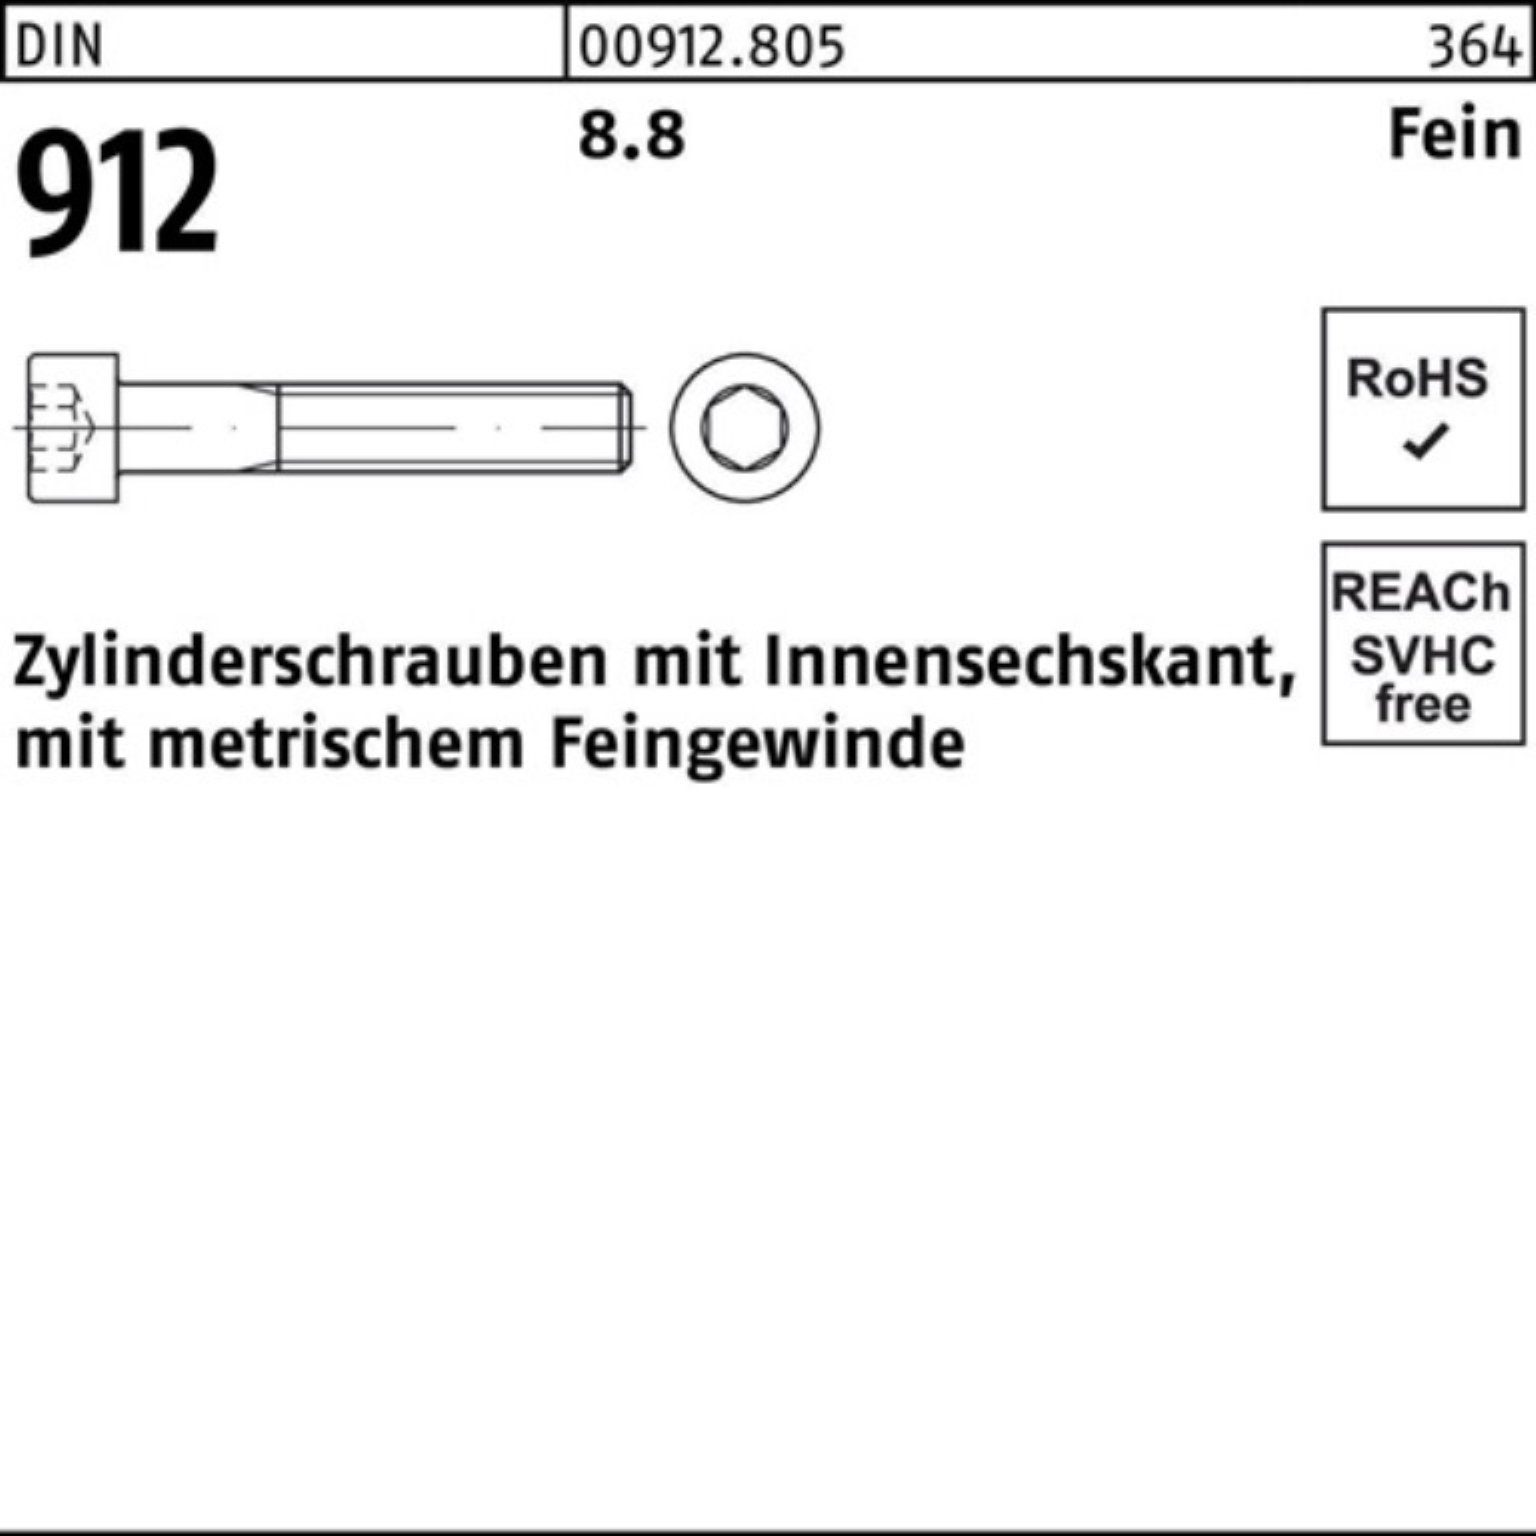 100 Reyher Zylinderschraube Innen-6kt 40 912 M14x1,5x DIN Stü 8.8 100er Pack Zylinderschraube